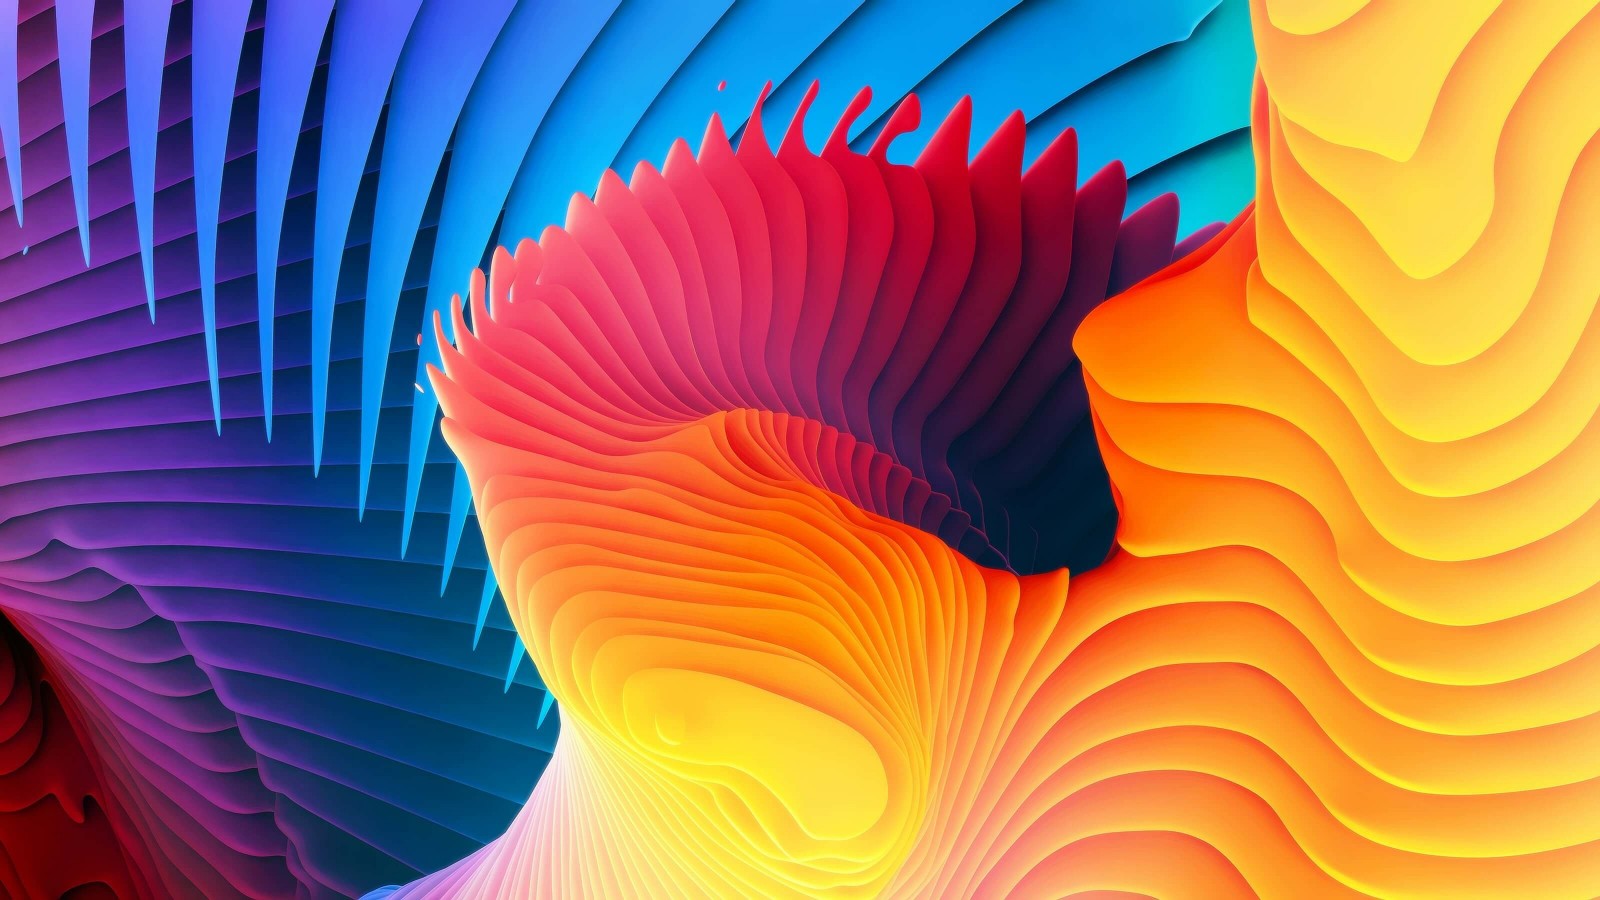 3D Colorful Spiral Wallpaper for Desktop 1600x900